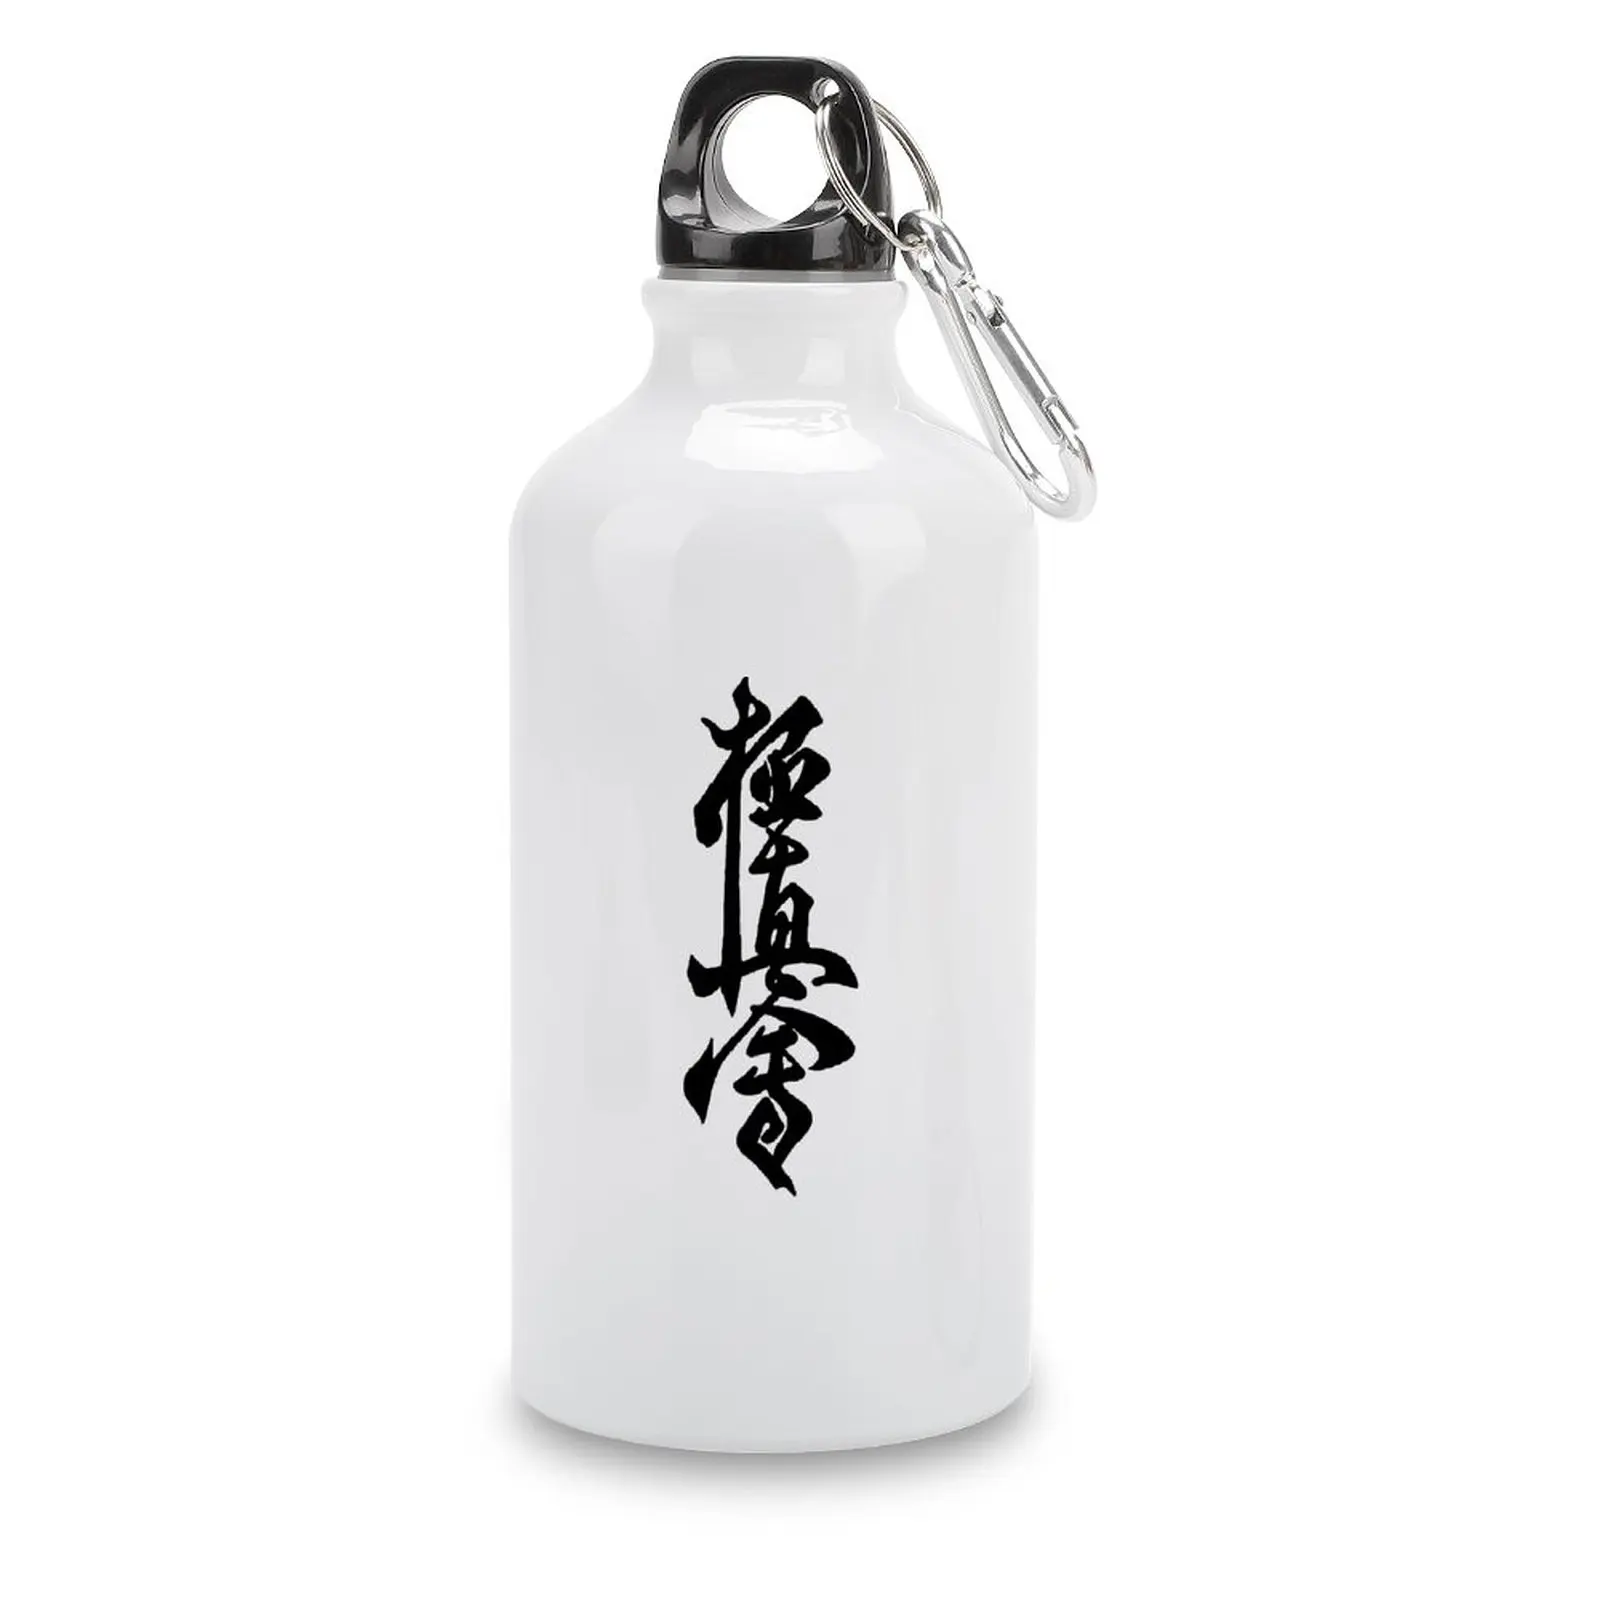 

DIY Sport Bottle Aluminum Kyokushin Karate Symbol Kyokushinkai Dojo Training 1 Kettle Tea Cups Thermos Flask Funny Novelty Uni